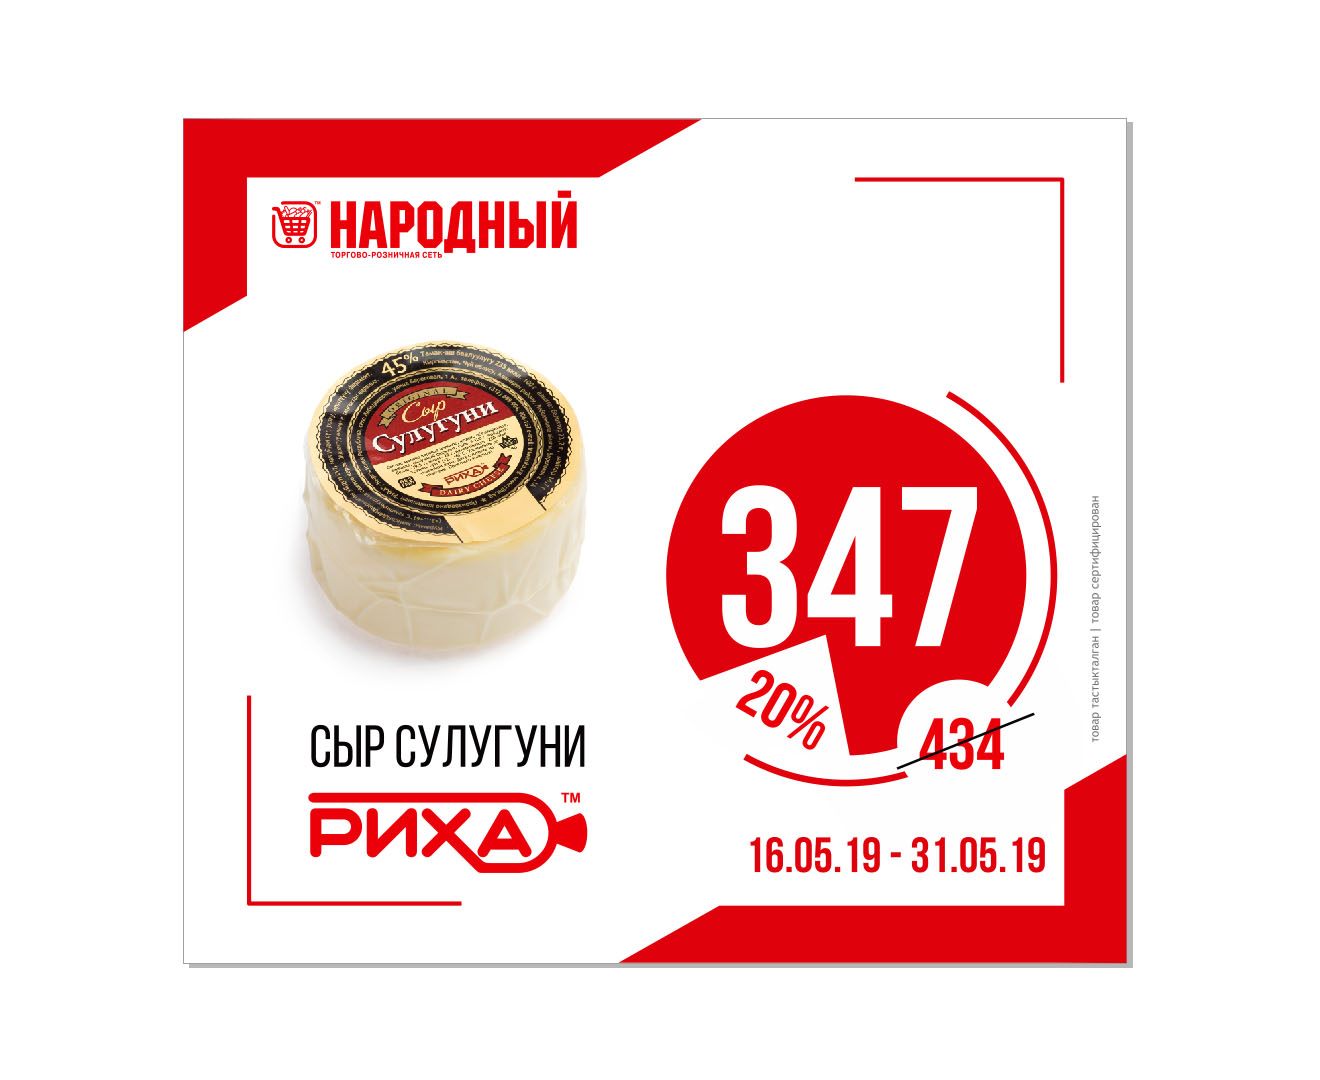 Акция от РИХА в торговой сети "Народный" с 16.05-31.05